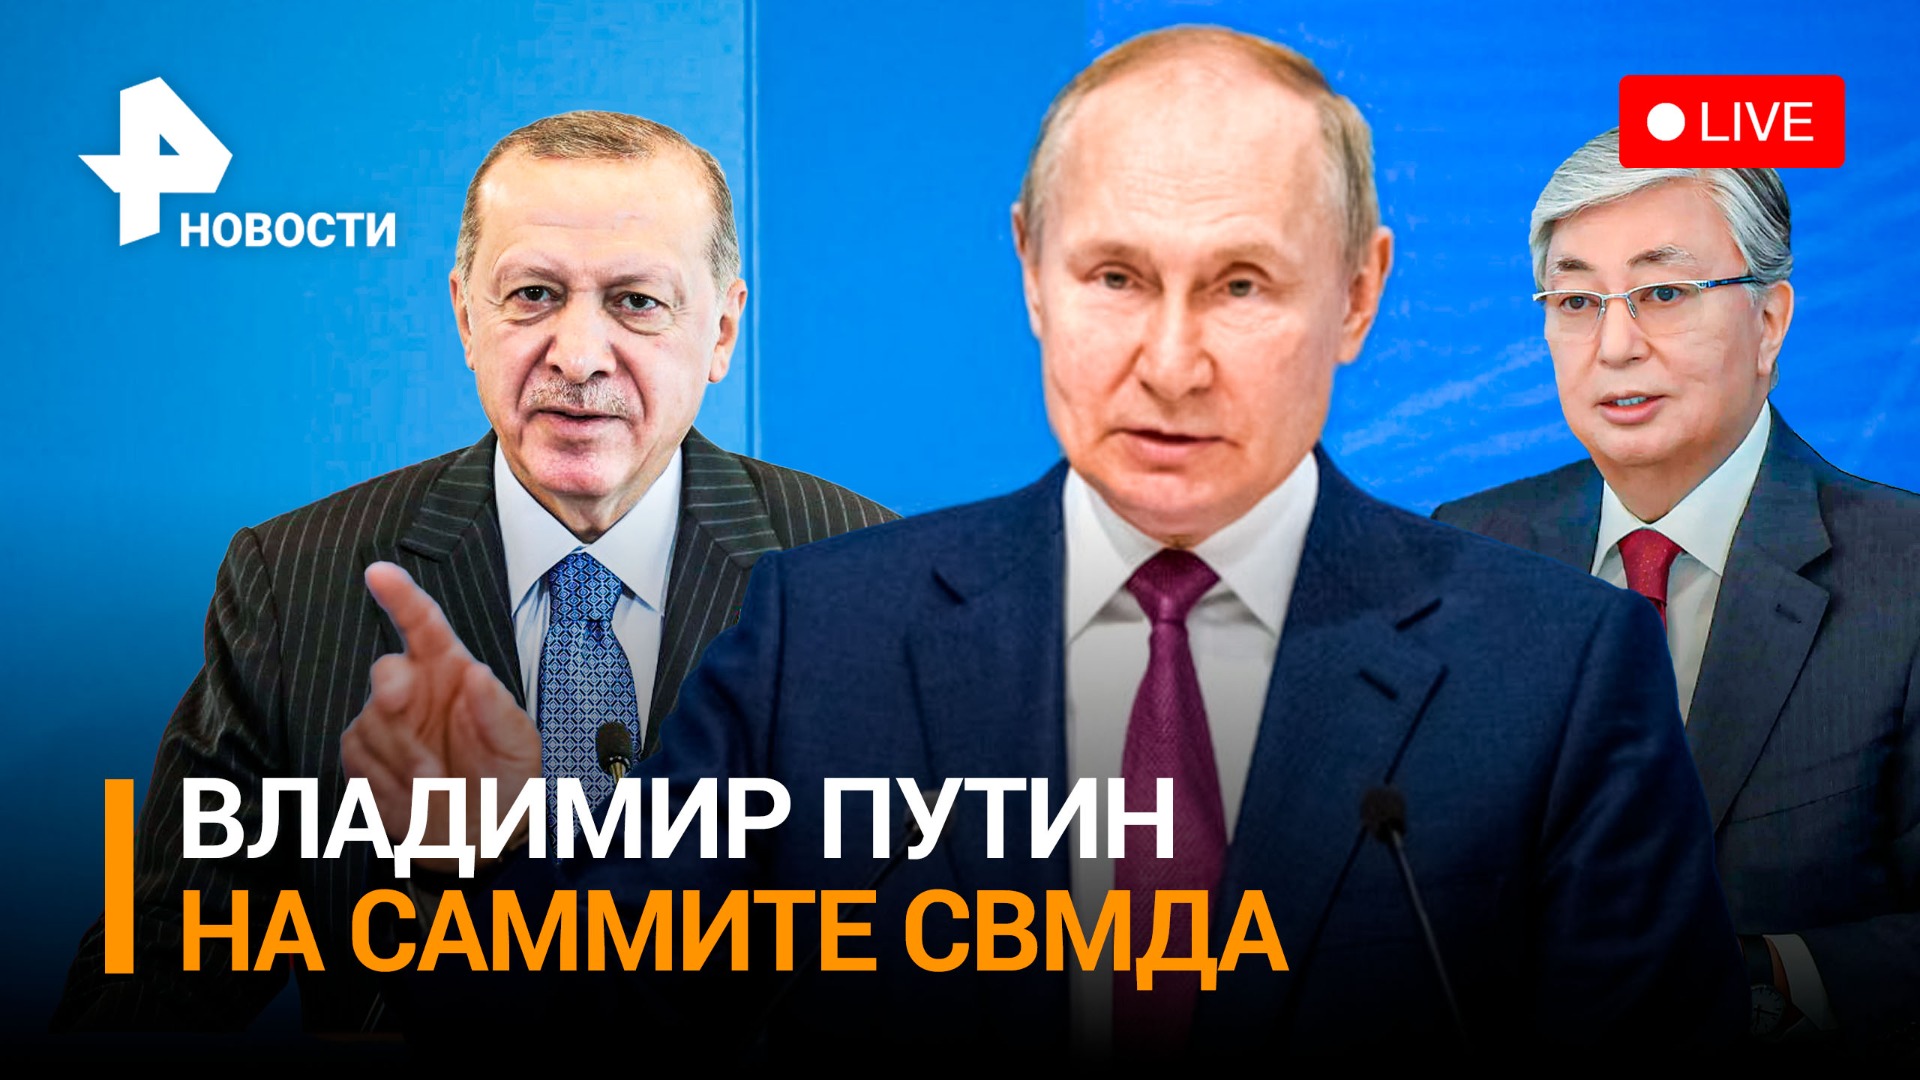 Президент России встречается с лидерами государств СВМДА на саммите в Астане / РЕН Новости